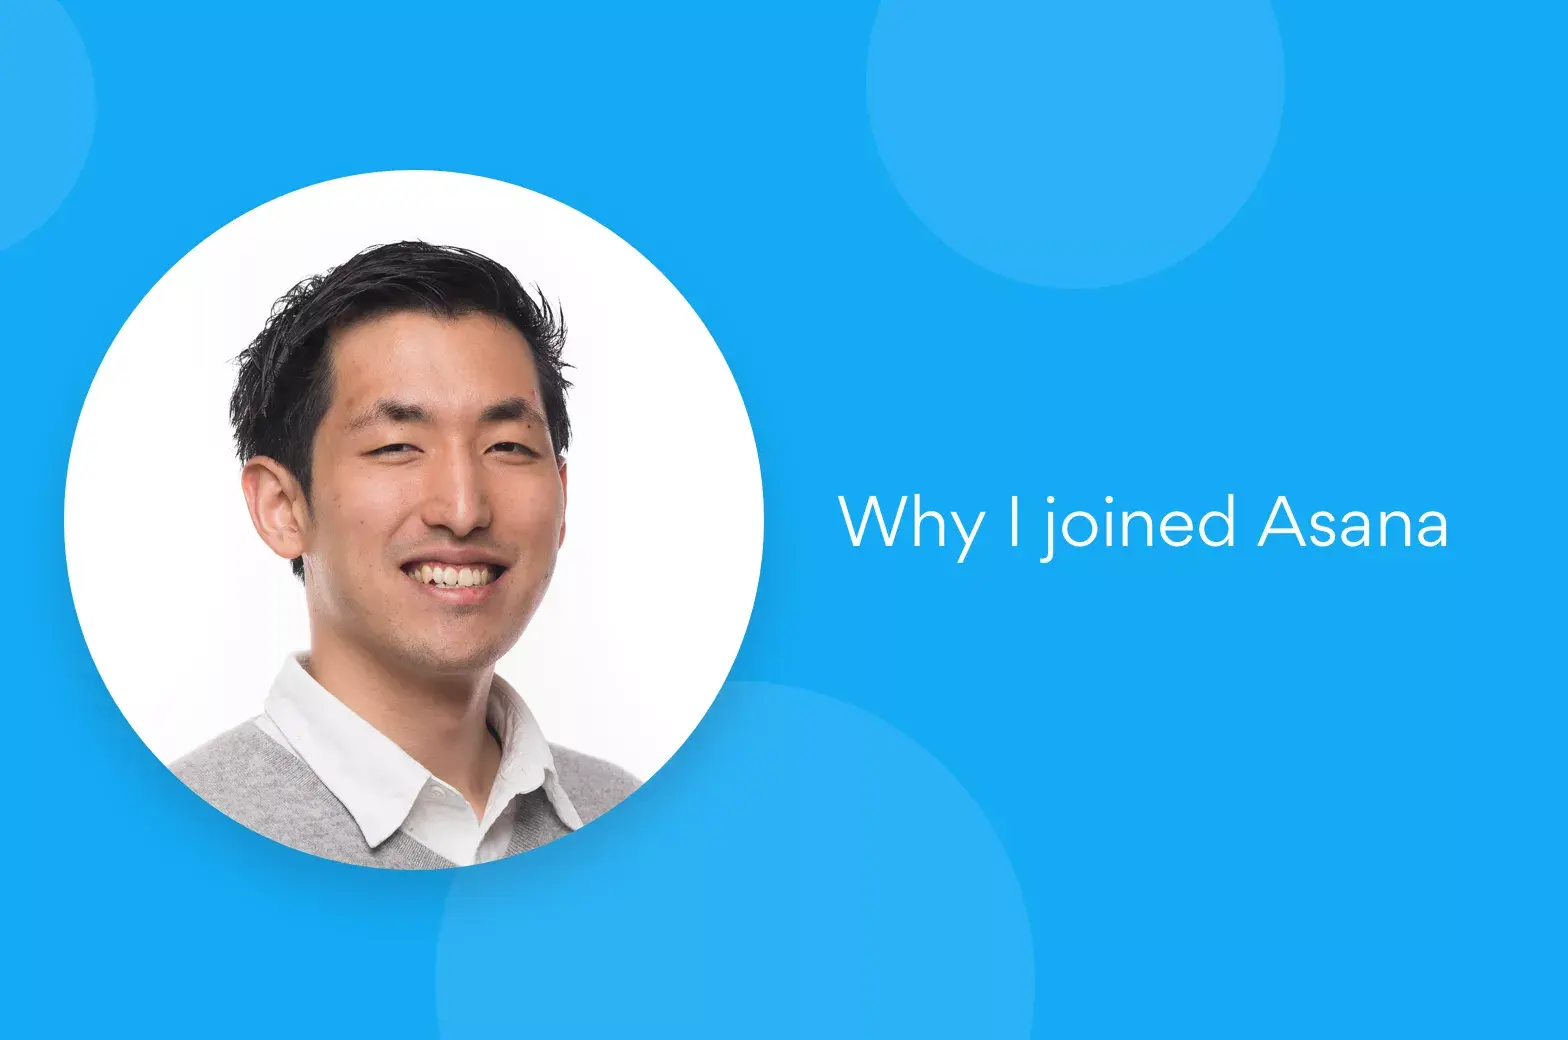 Why I joined Asana: Hiro Yamada, Solutions Engineer